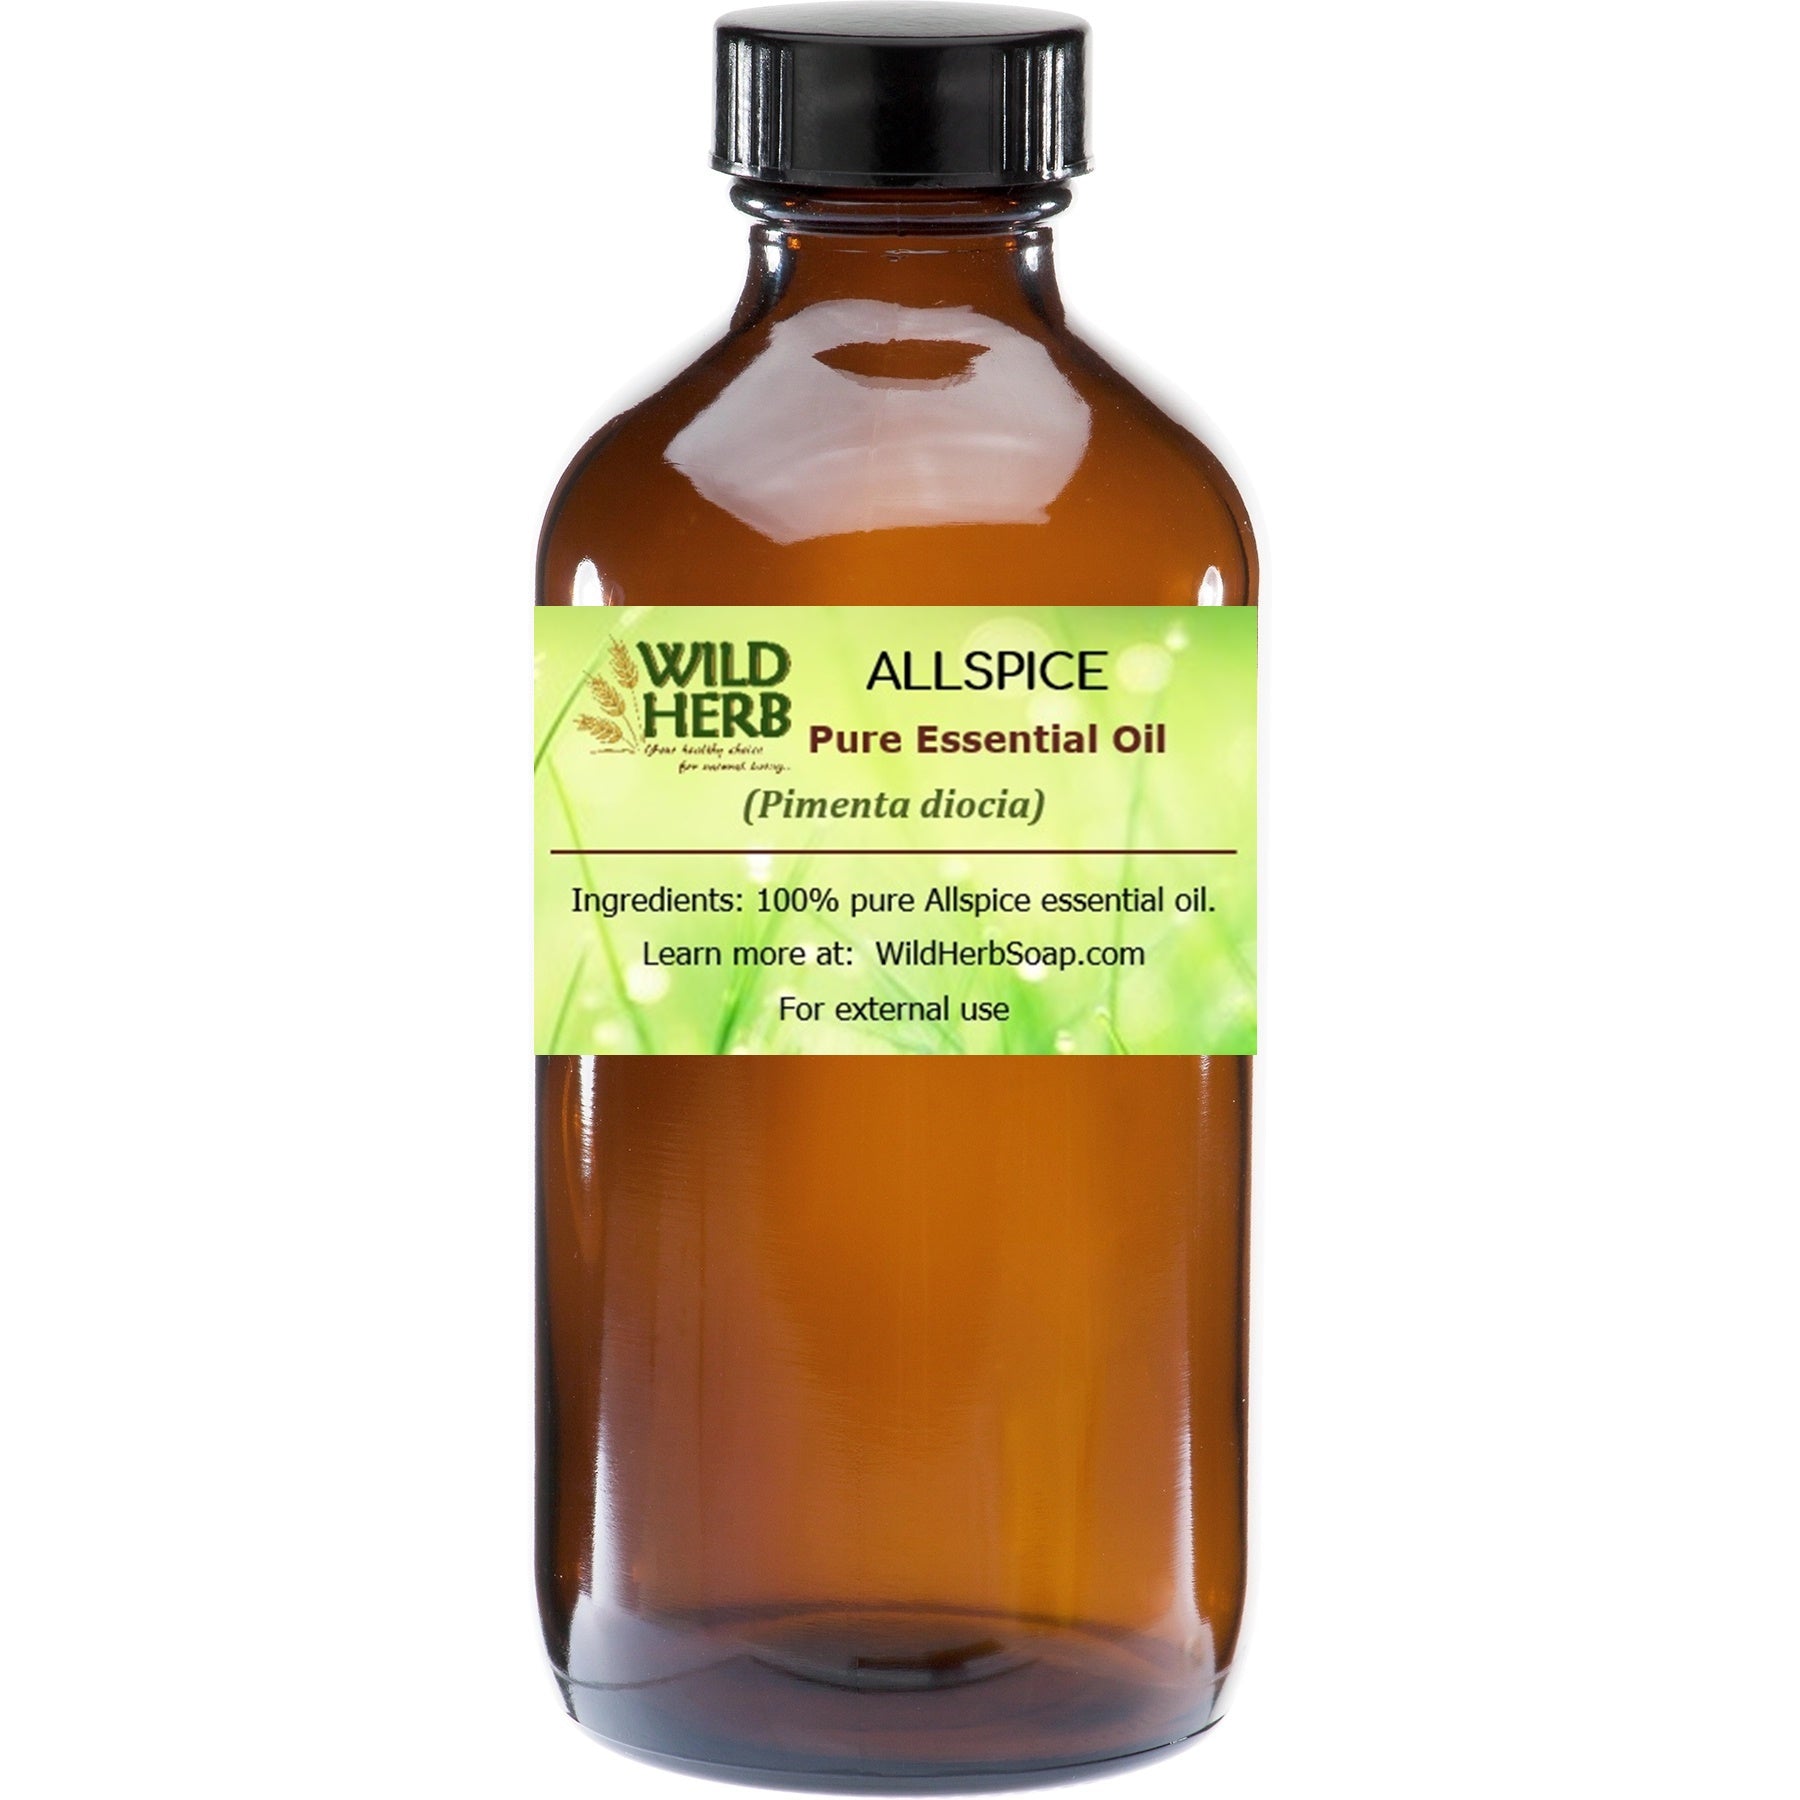 Allspice Pure Essential Oil